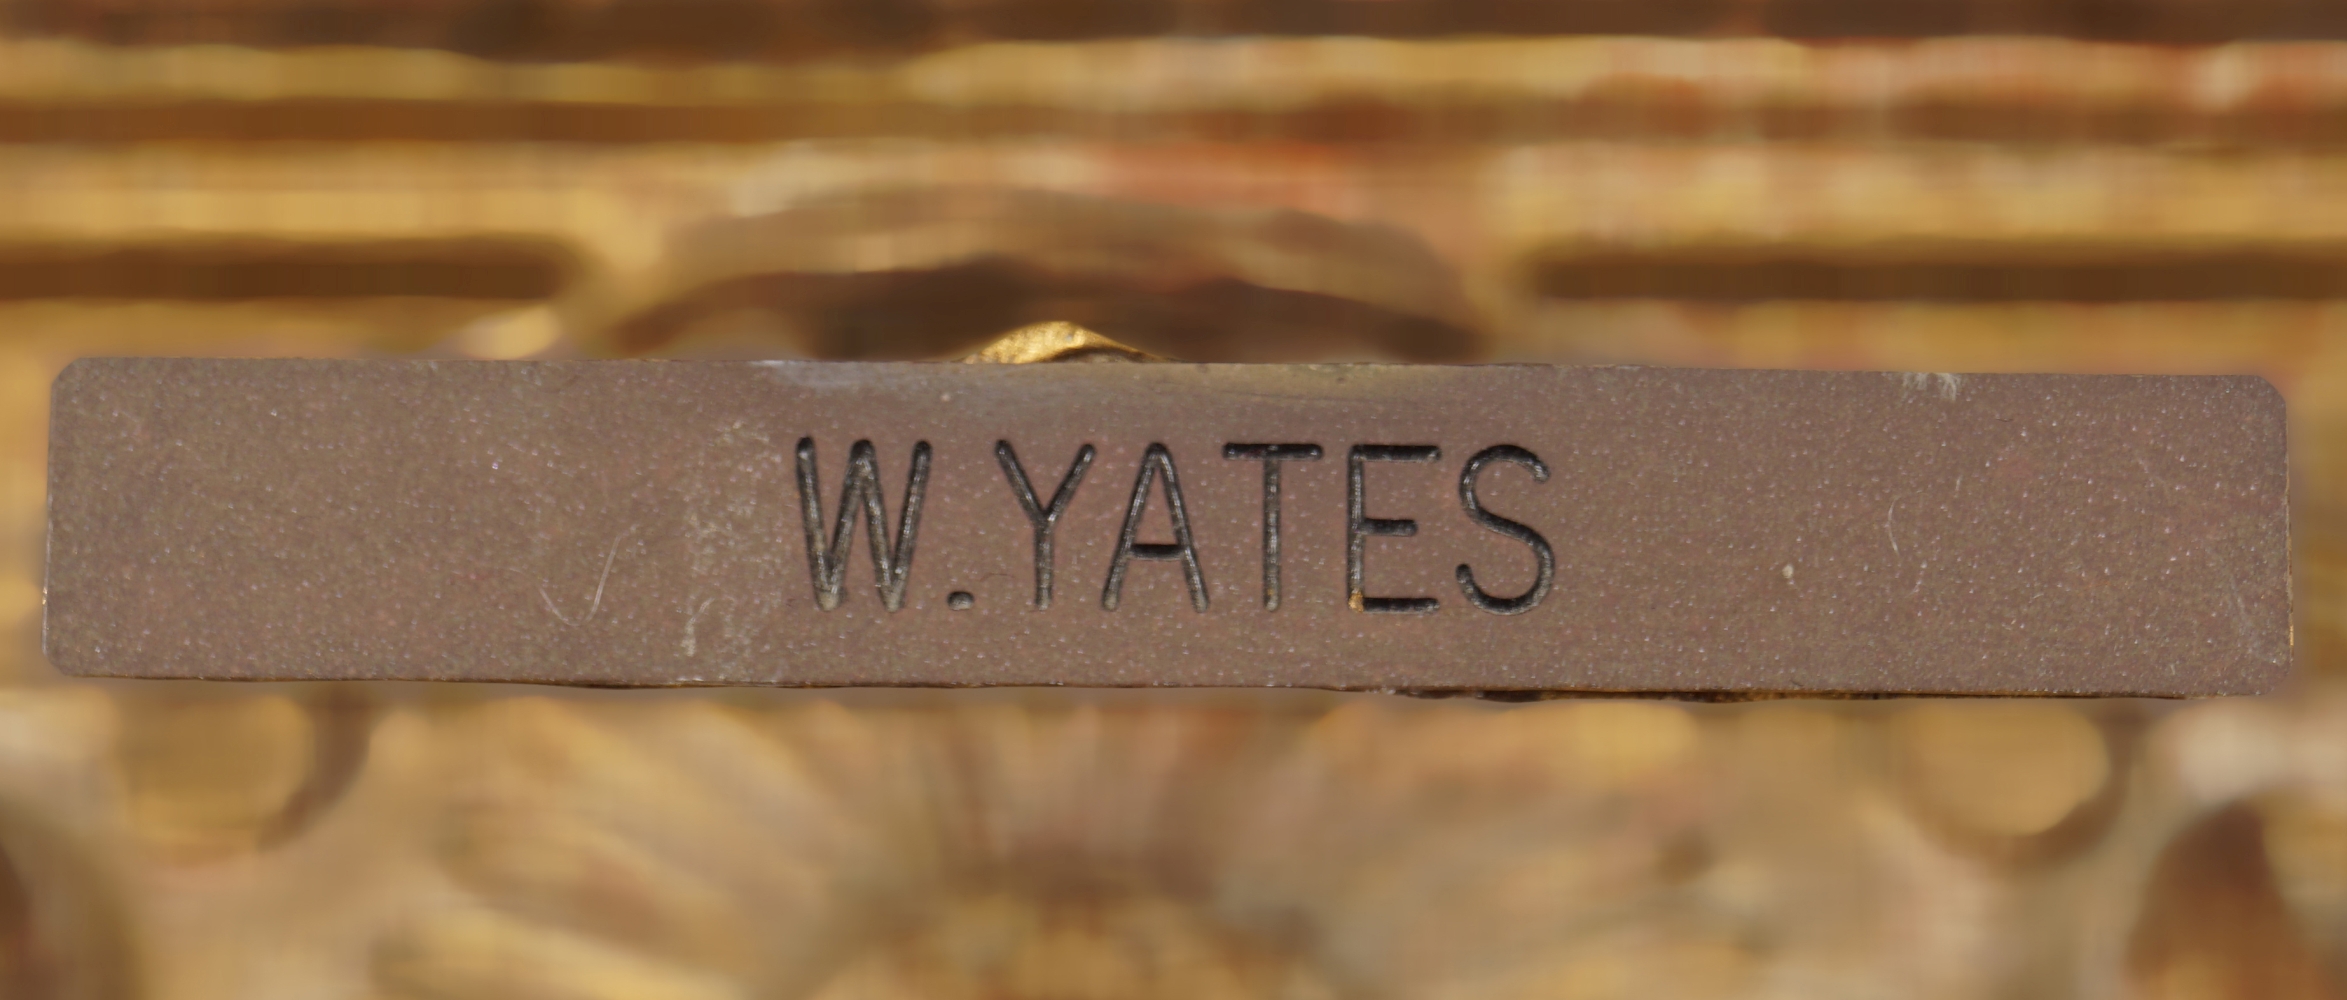 W. YATES - Image 3 of 4